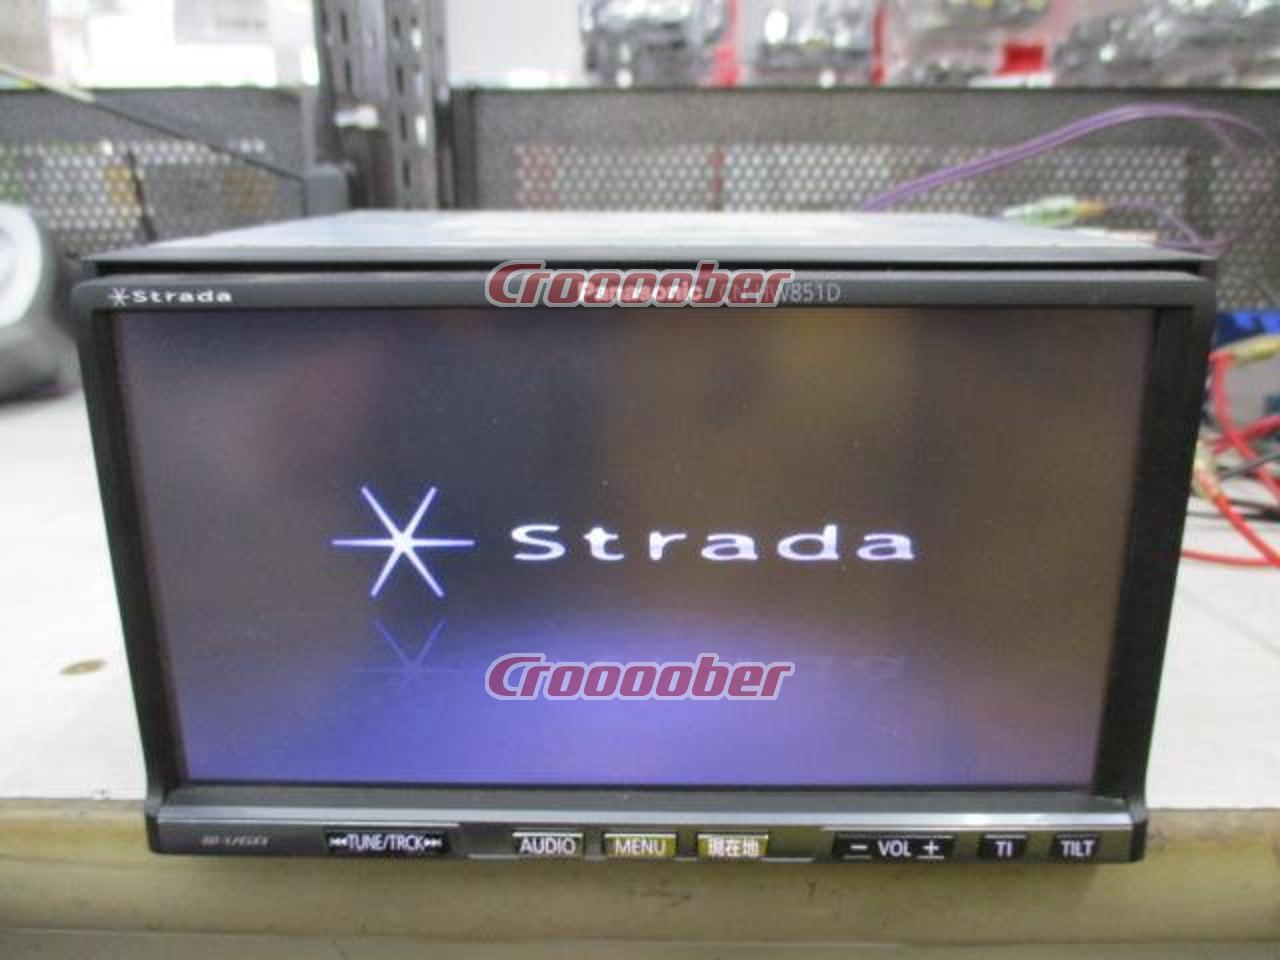 Panasonic * Strada CN-HW851D Terrestrial Digital Broadcasting 